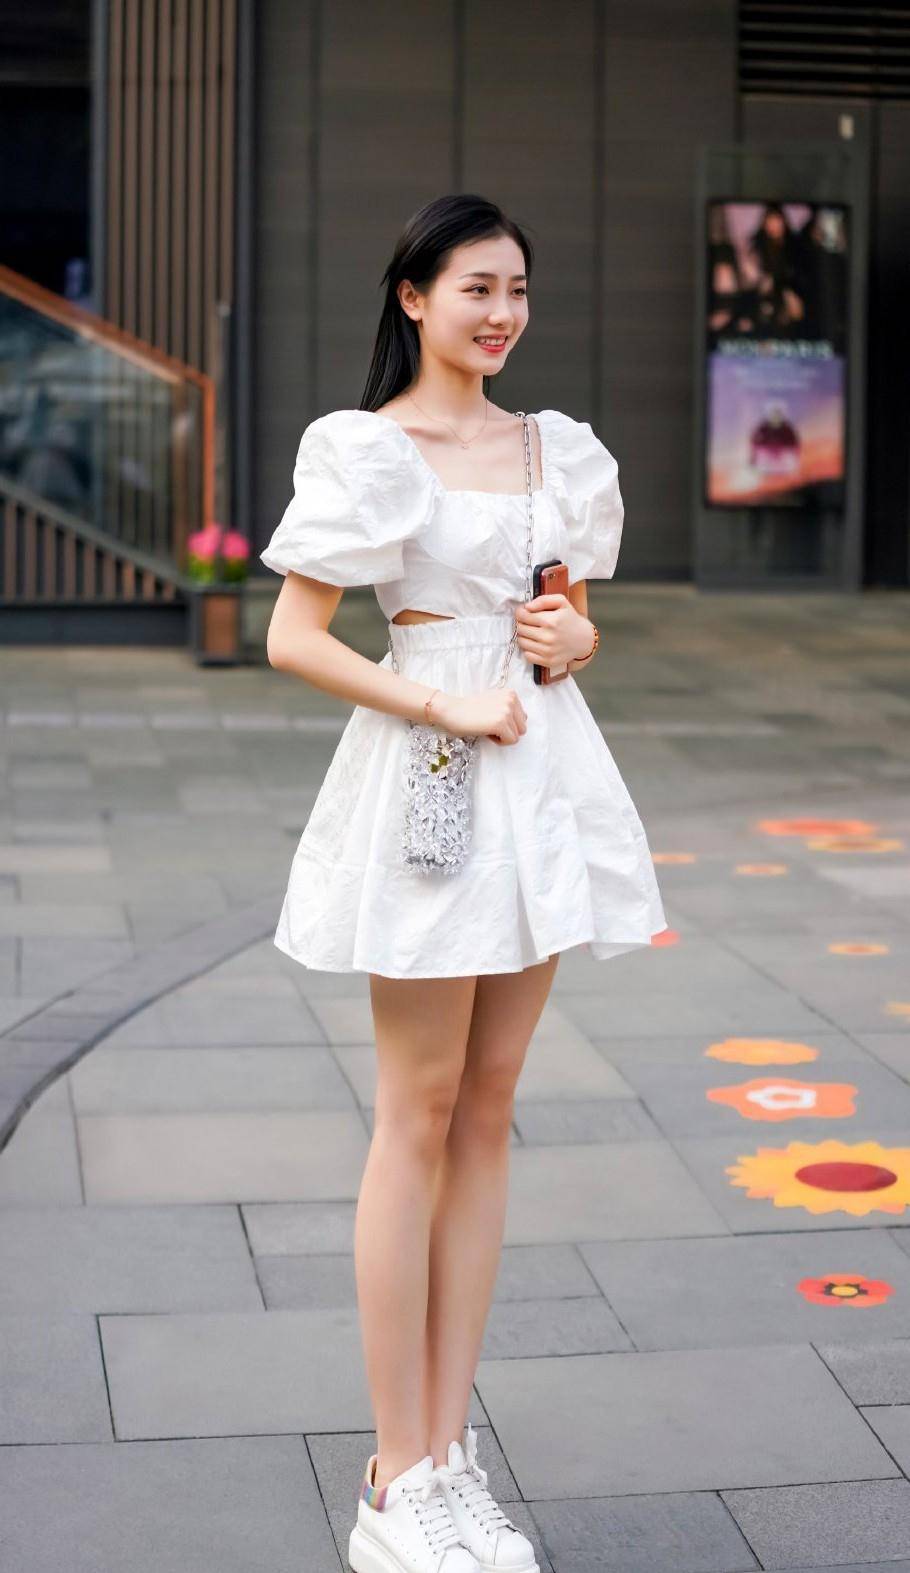 原创夏天穿裙子清爽才舒适小白裙小白鞋清凉干净又显气质